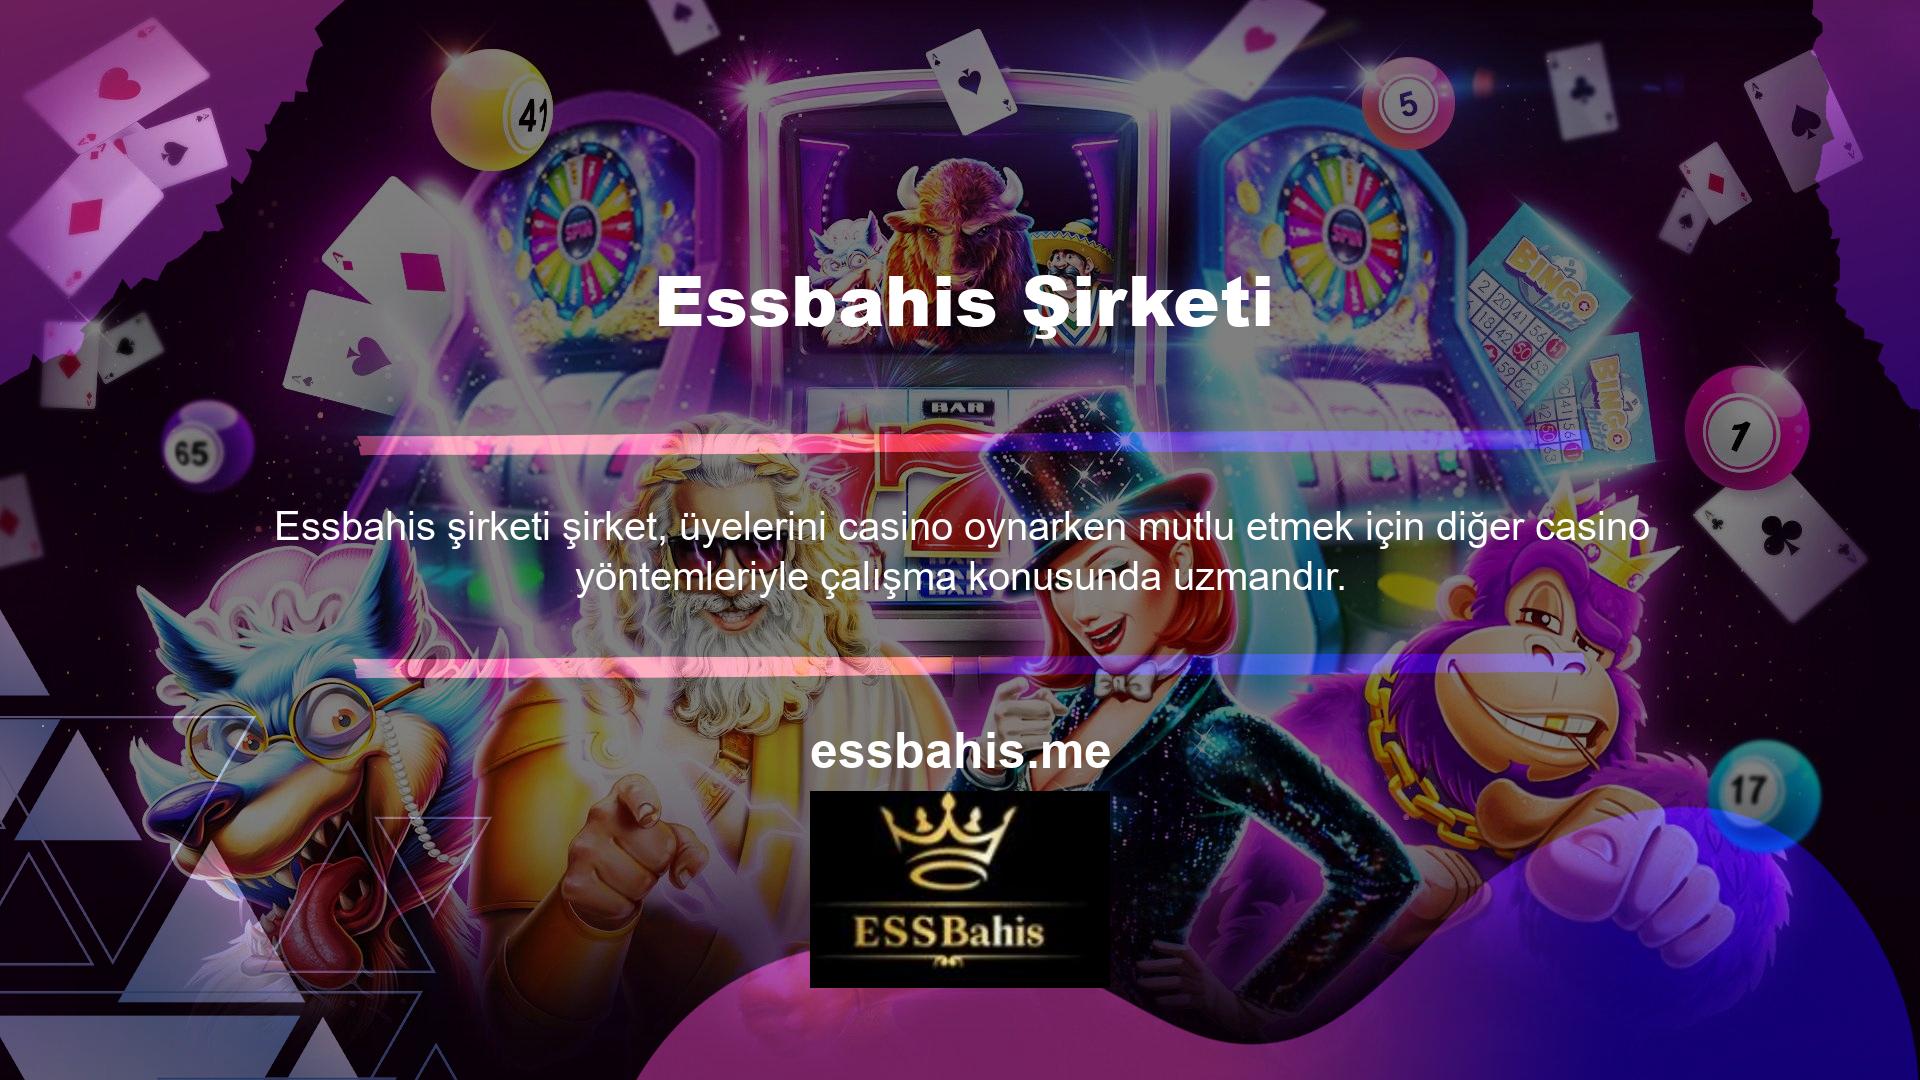 Essbahis canlı casino hizmetine giriş yaptığınızda karşınıza yüzlerce farklı oyun seçeneği çıkacaktır